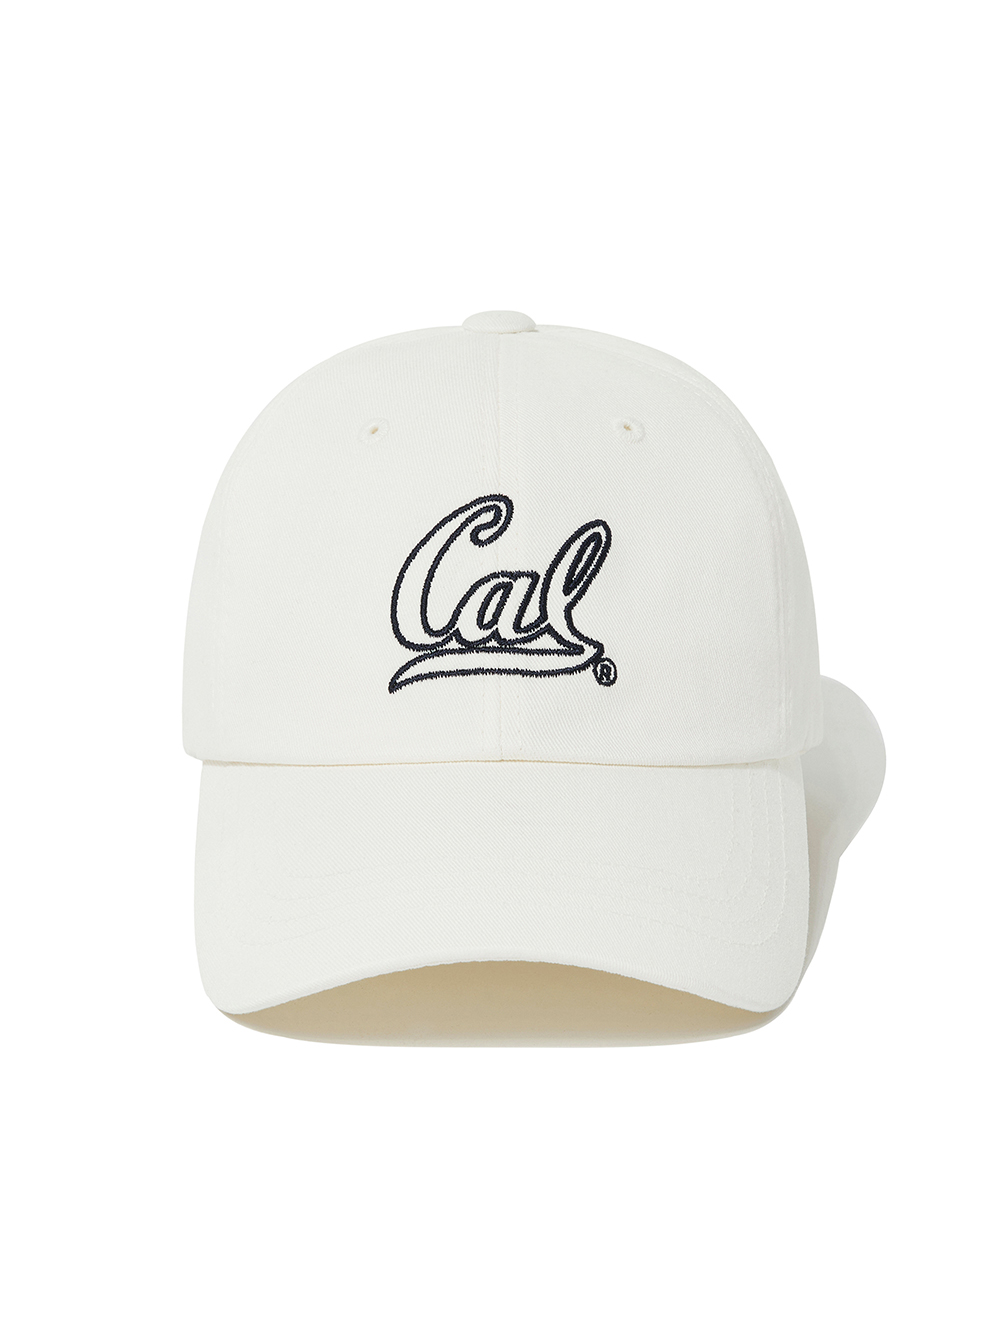 OUTLINE STITCH CAL LOGO CAP [IVORY]